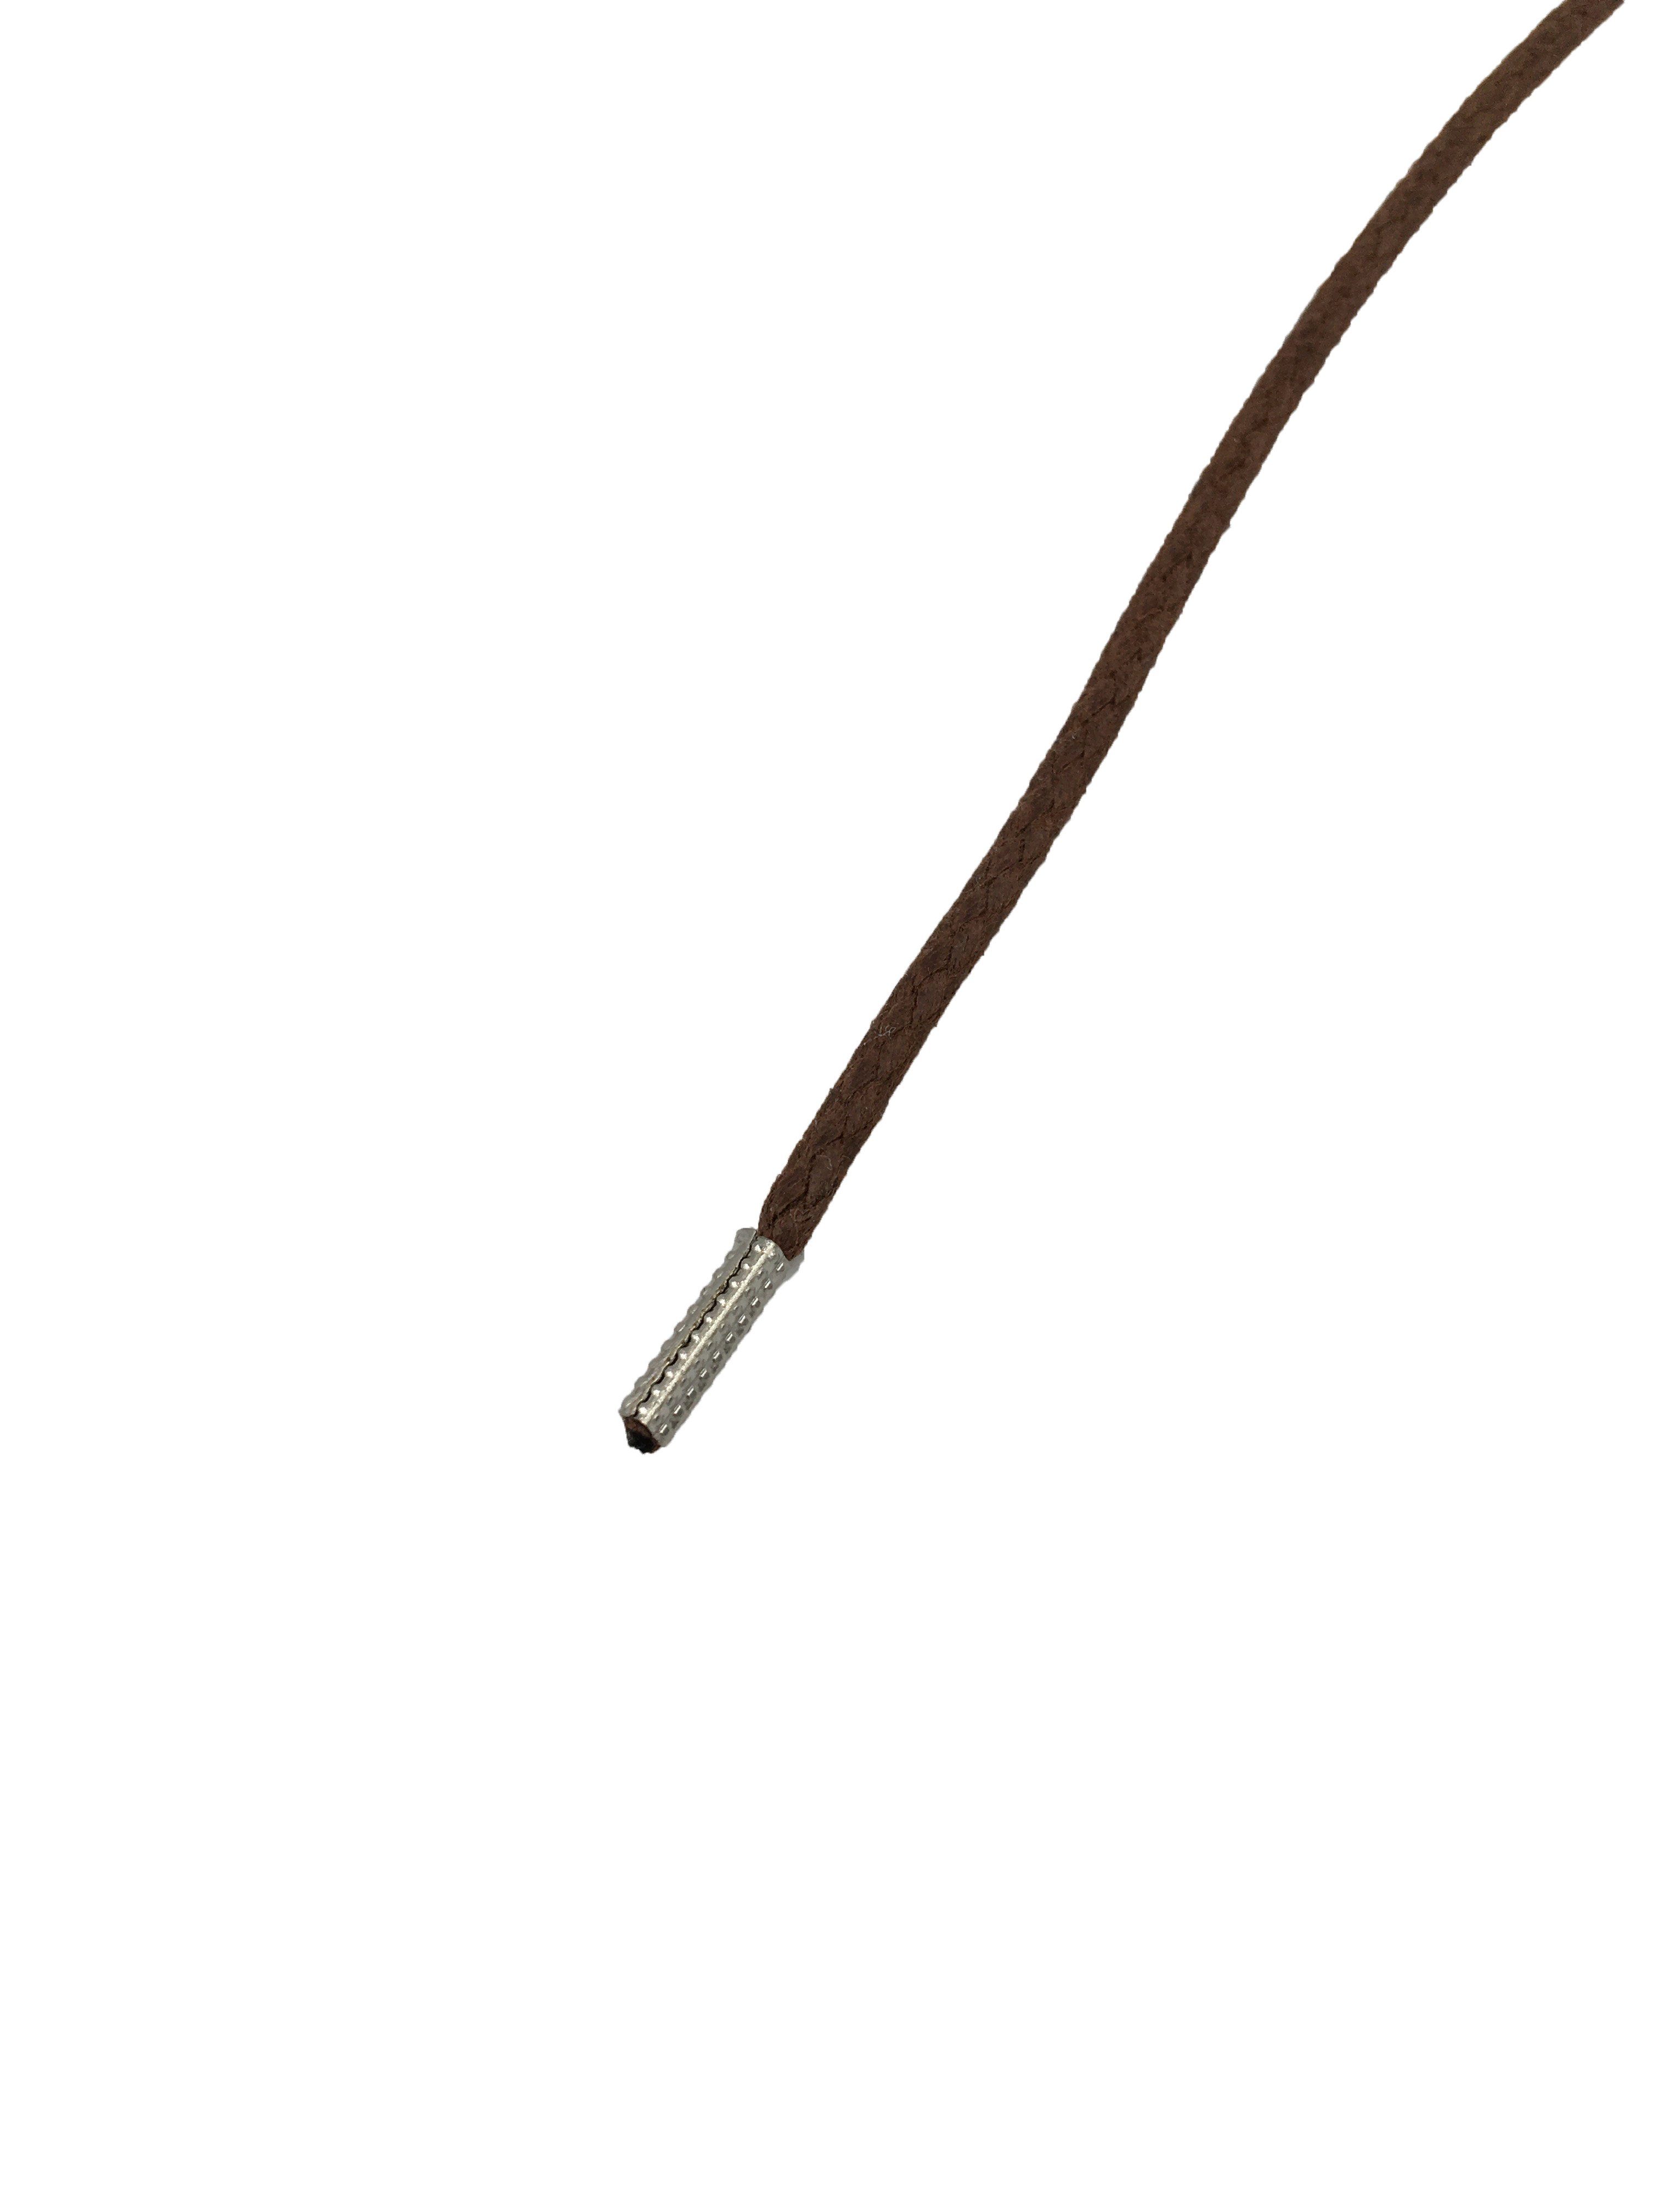 Rema Schnürsenkel Rema Schnürsenkel Cognac - rund - gewachst - Kordel - ca. 2,5 mm dünn für Sie nach Wunschlänge geschnitten und mit Metallenden versehen